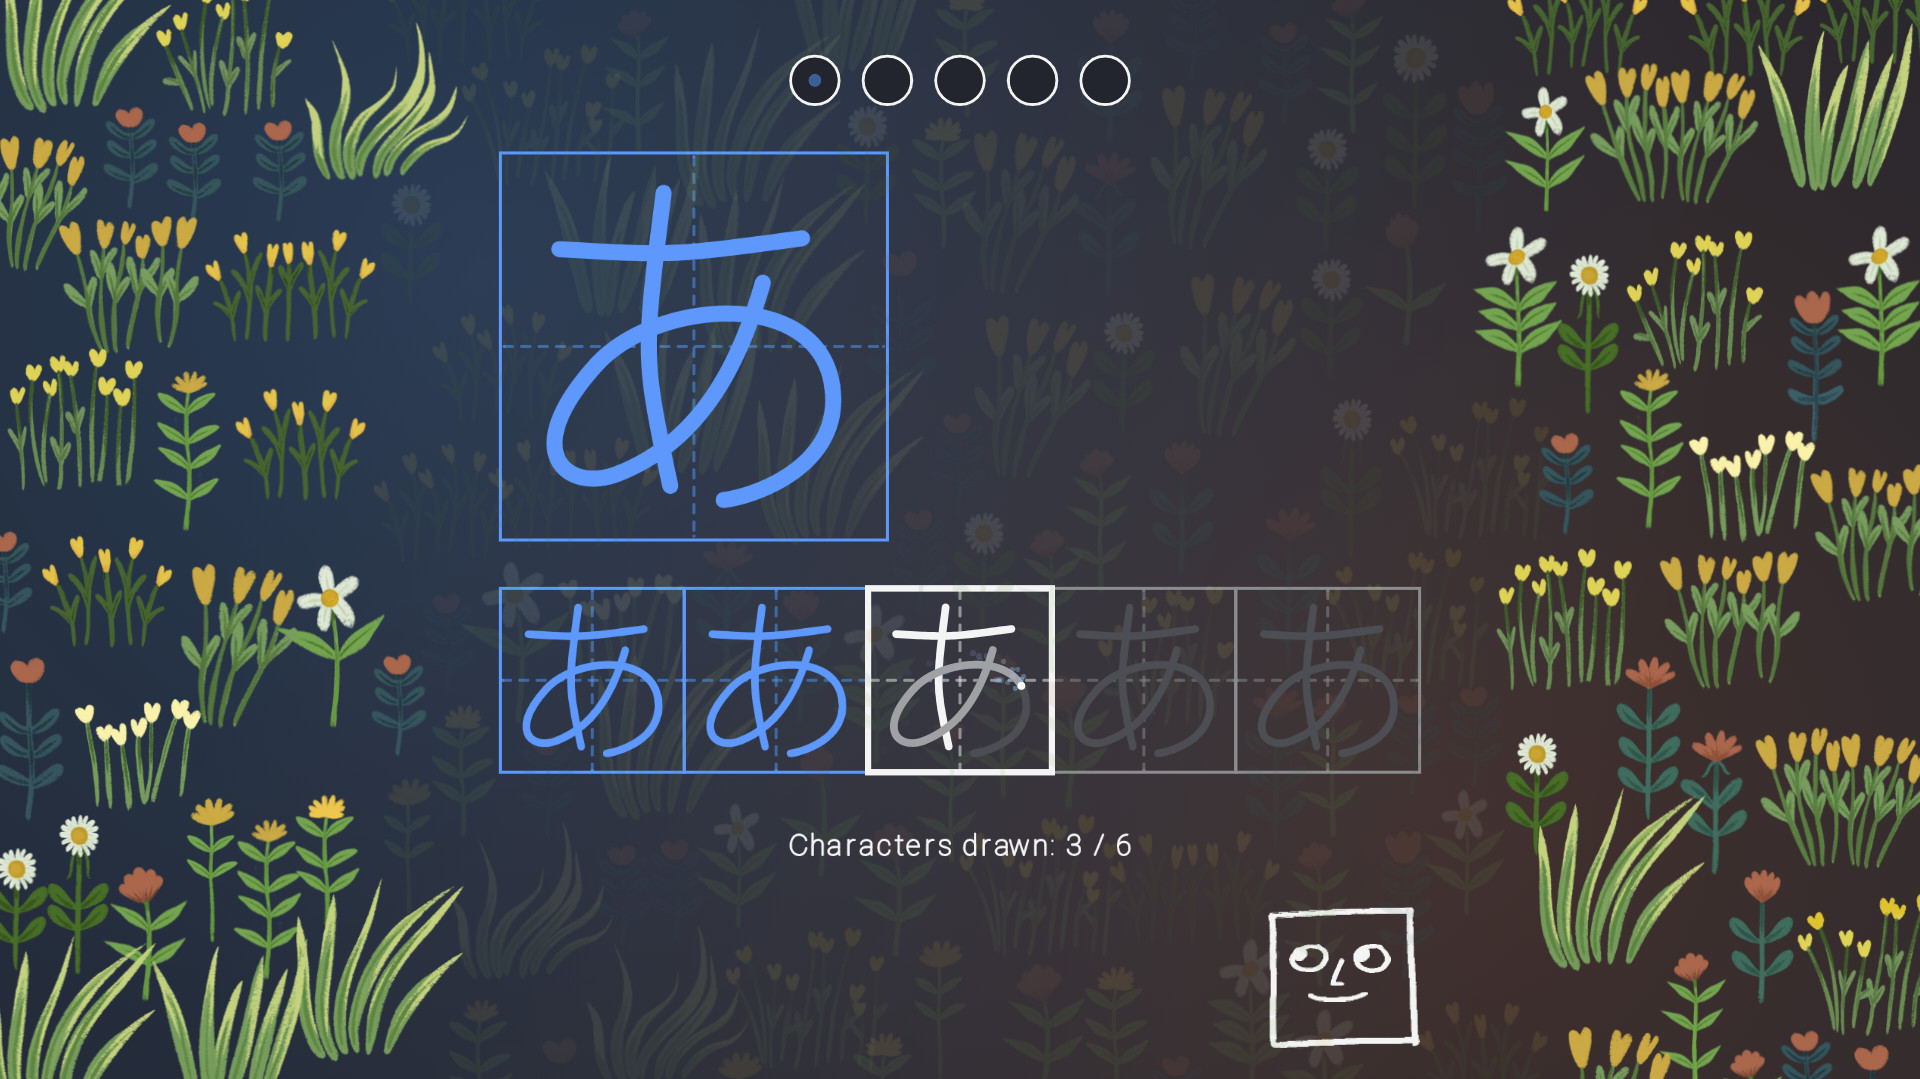 You Can Kana - Learn Japanese Hiragana & Katakana Steam CD Key 1.12 usd